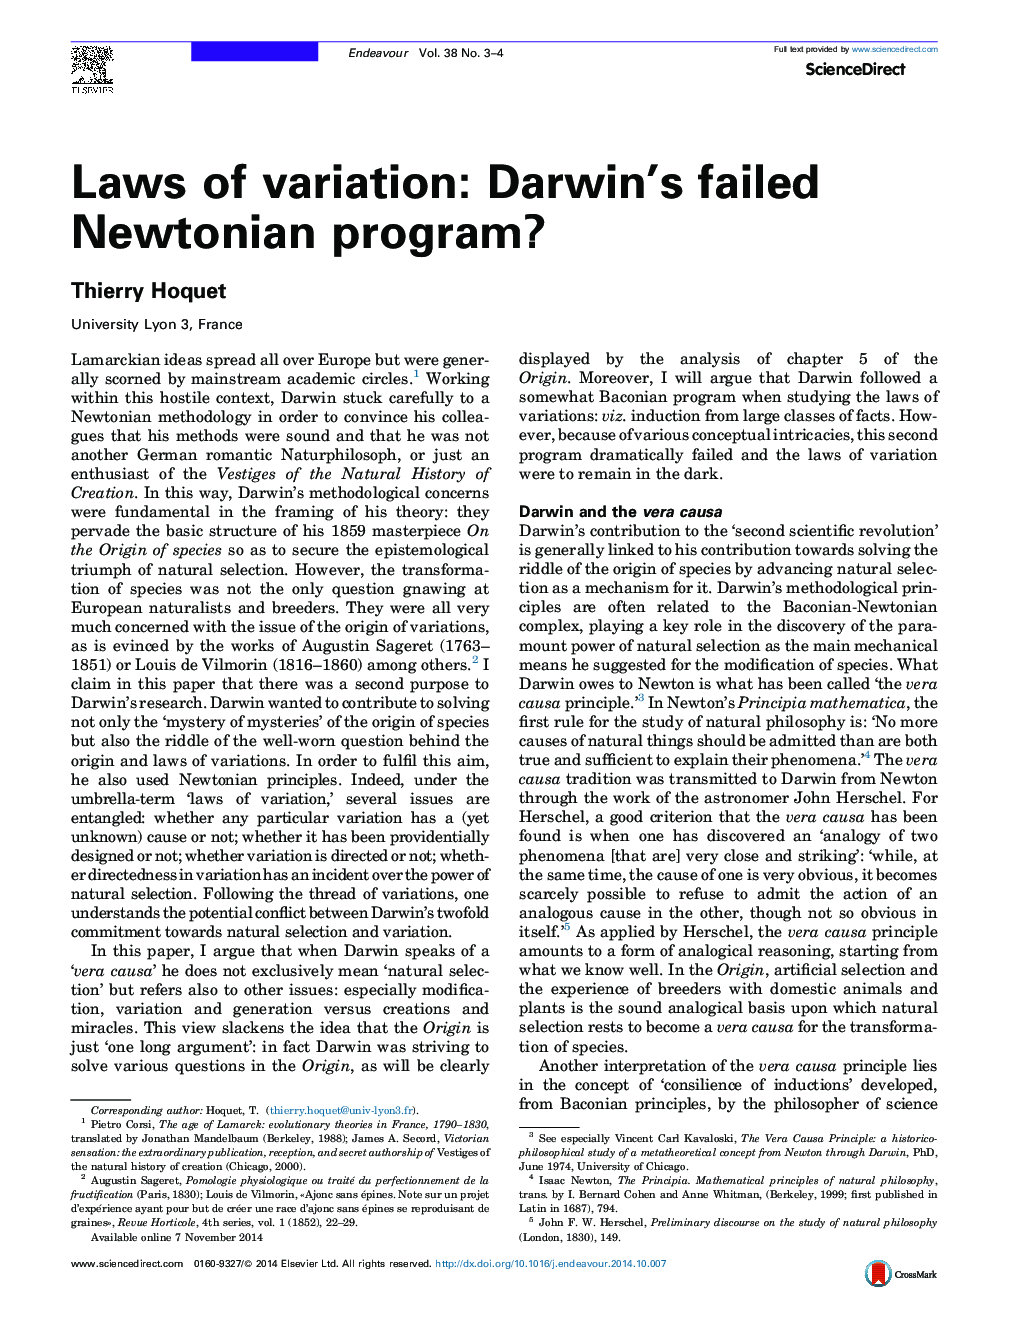 قوانین تنوع: برنامه نیوتنی شکست خورده داروین؟ 